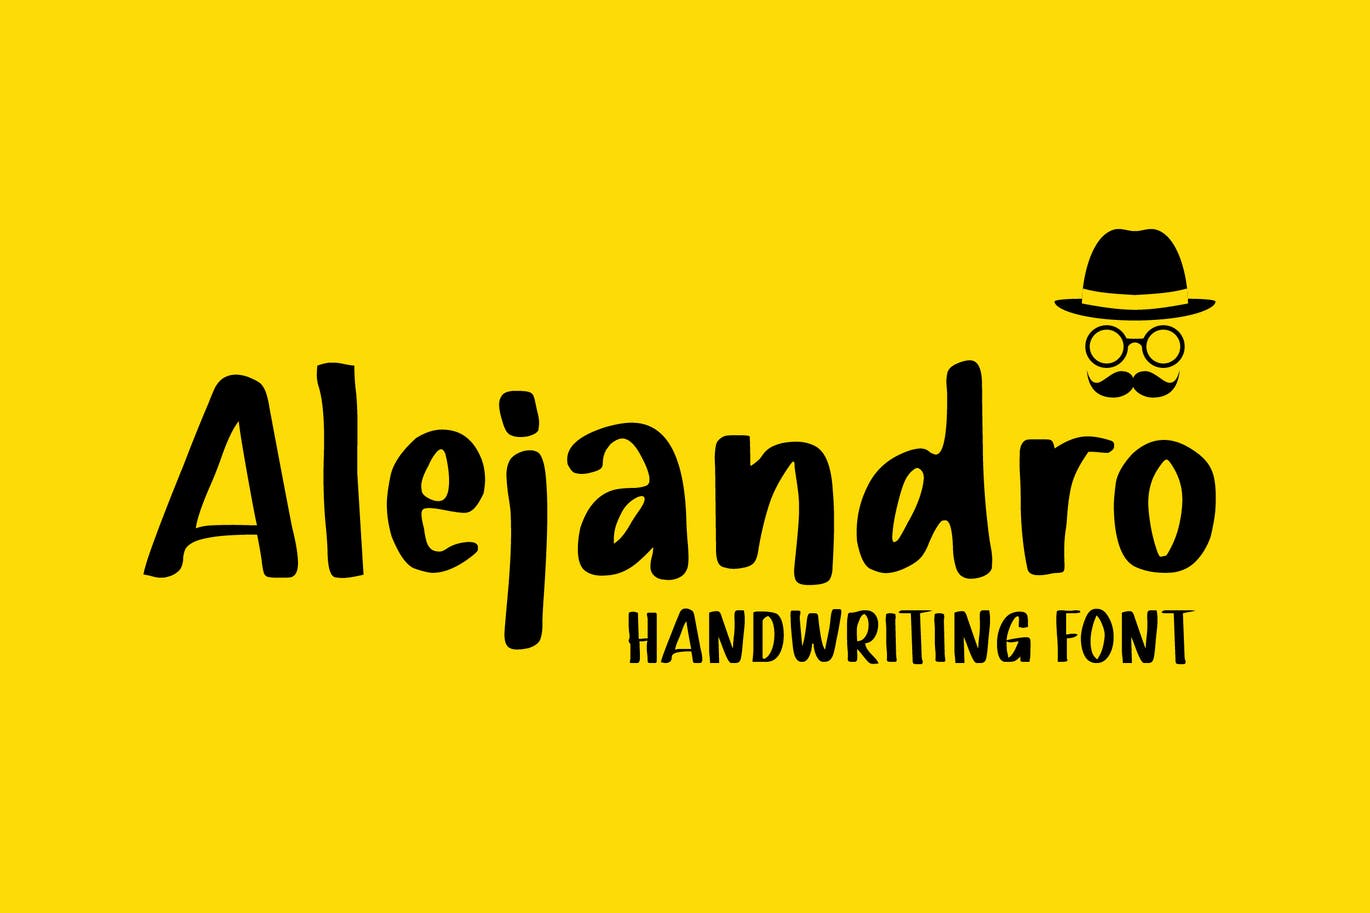 黑色波浪曲线状英文字体素材 Alejandro